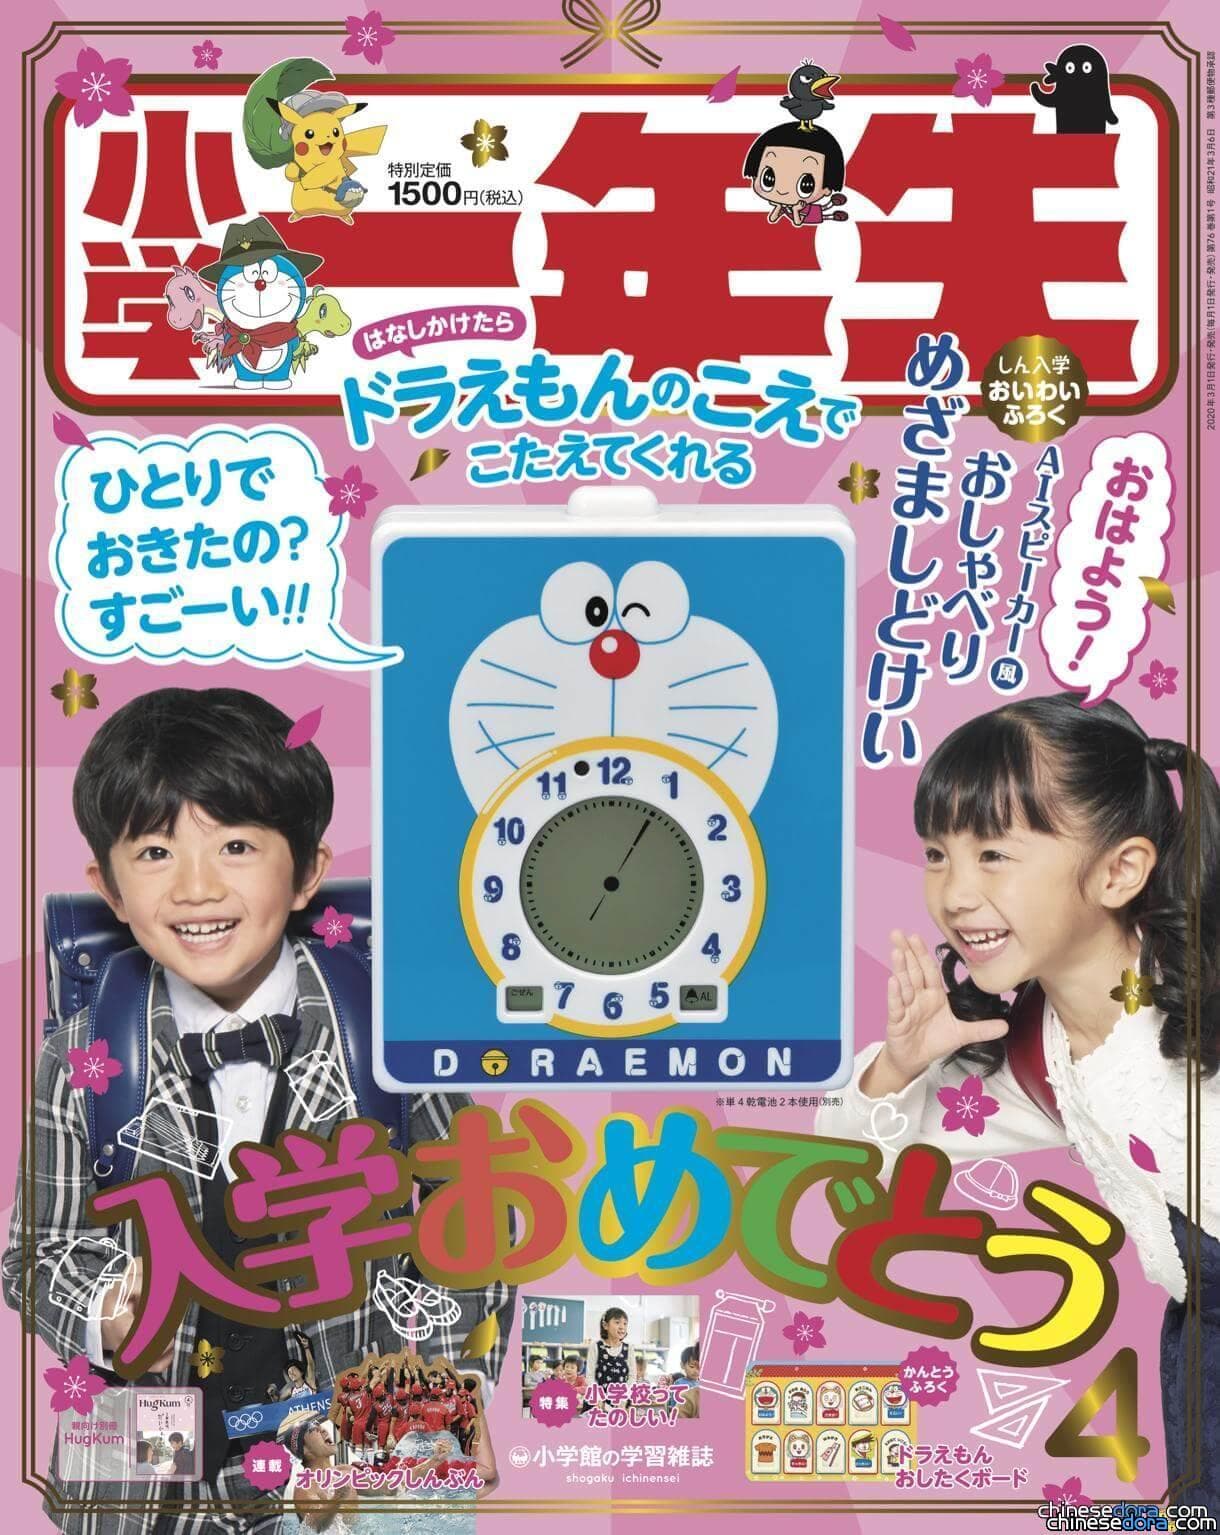 [日本] 會說話的哆啦A夢時鐘!? 《小學一年生》2020年4月號配合小卡板教小朋友時間概念